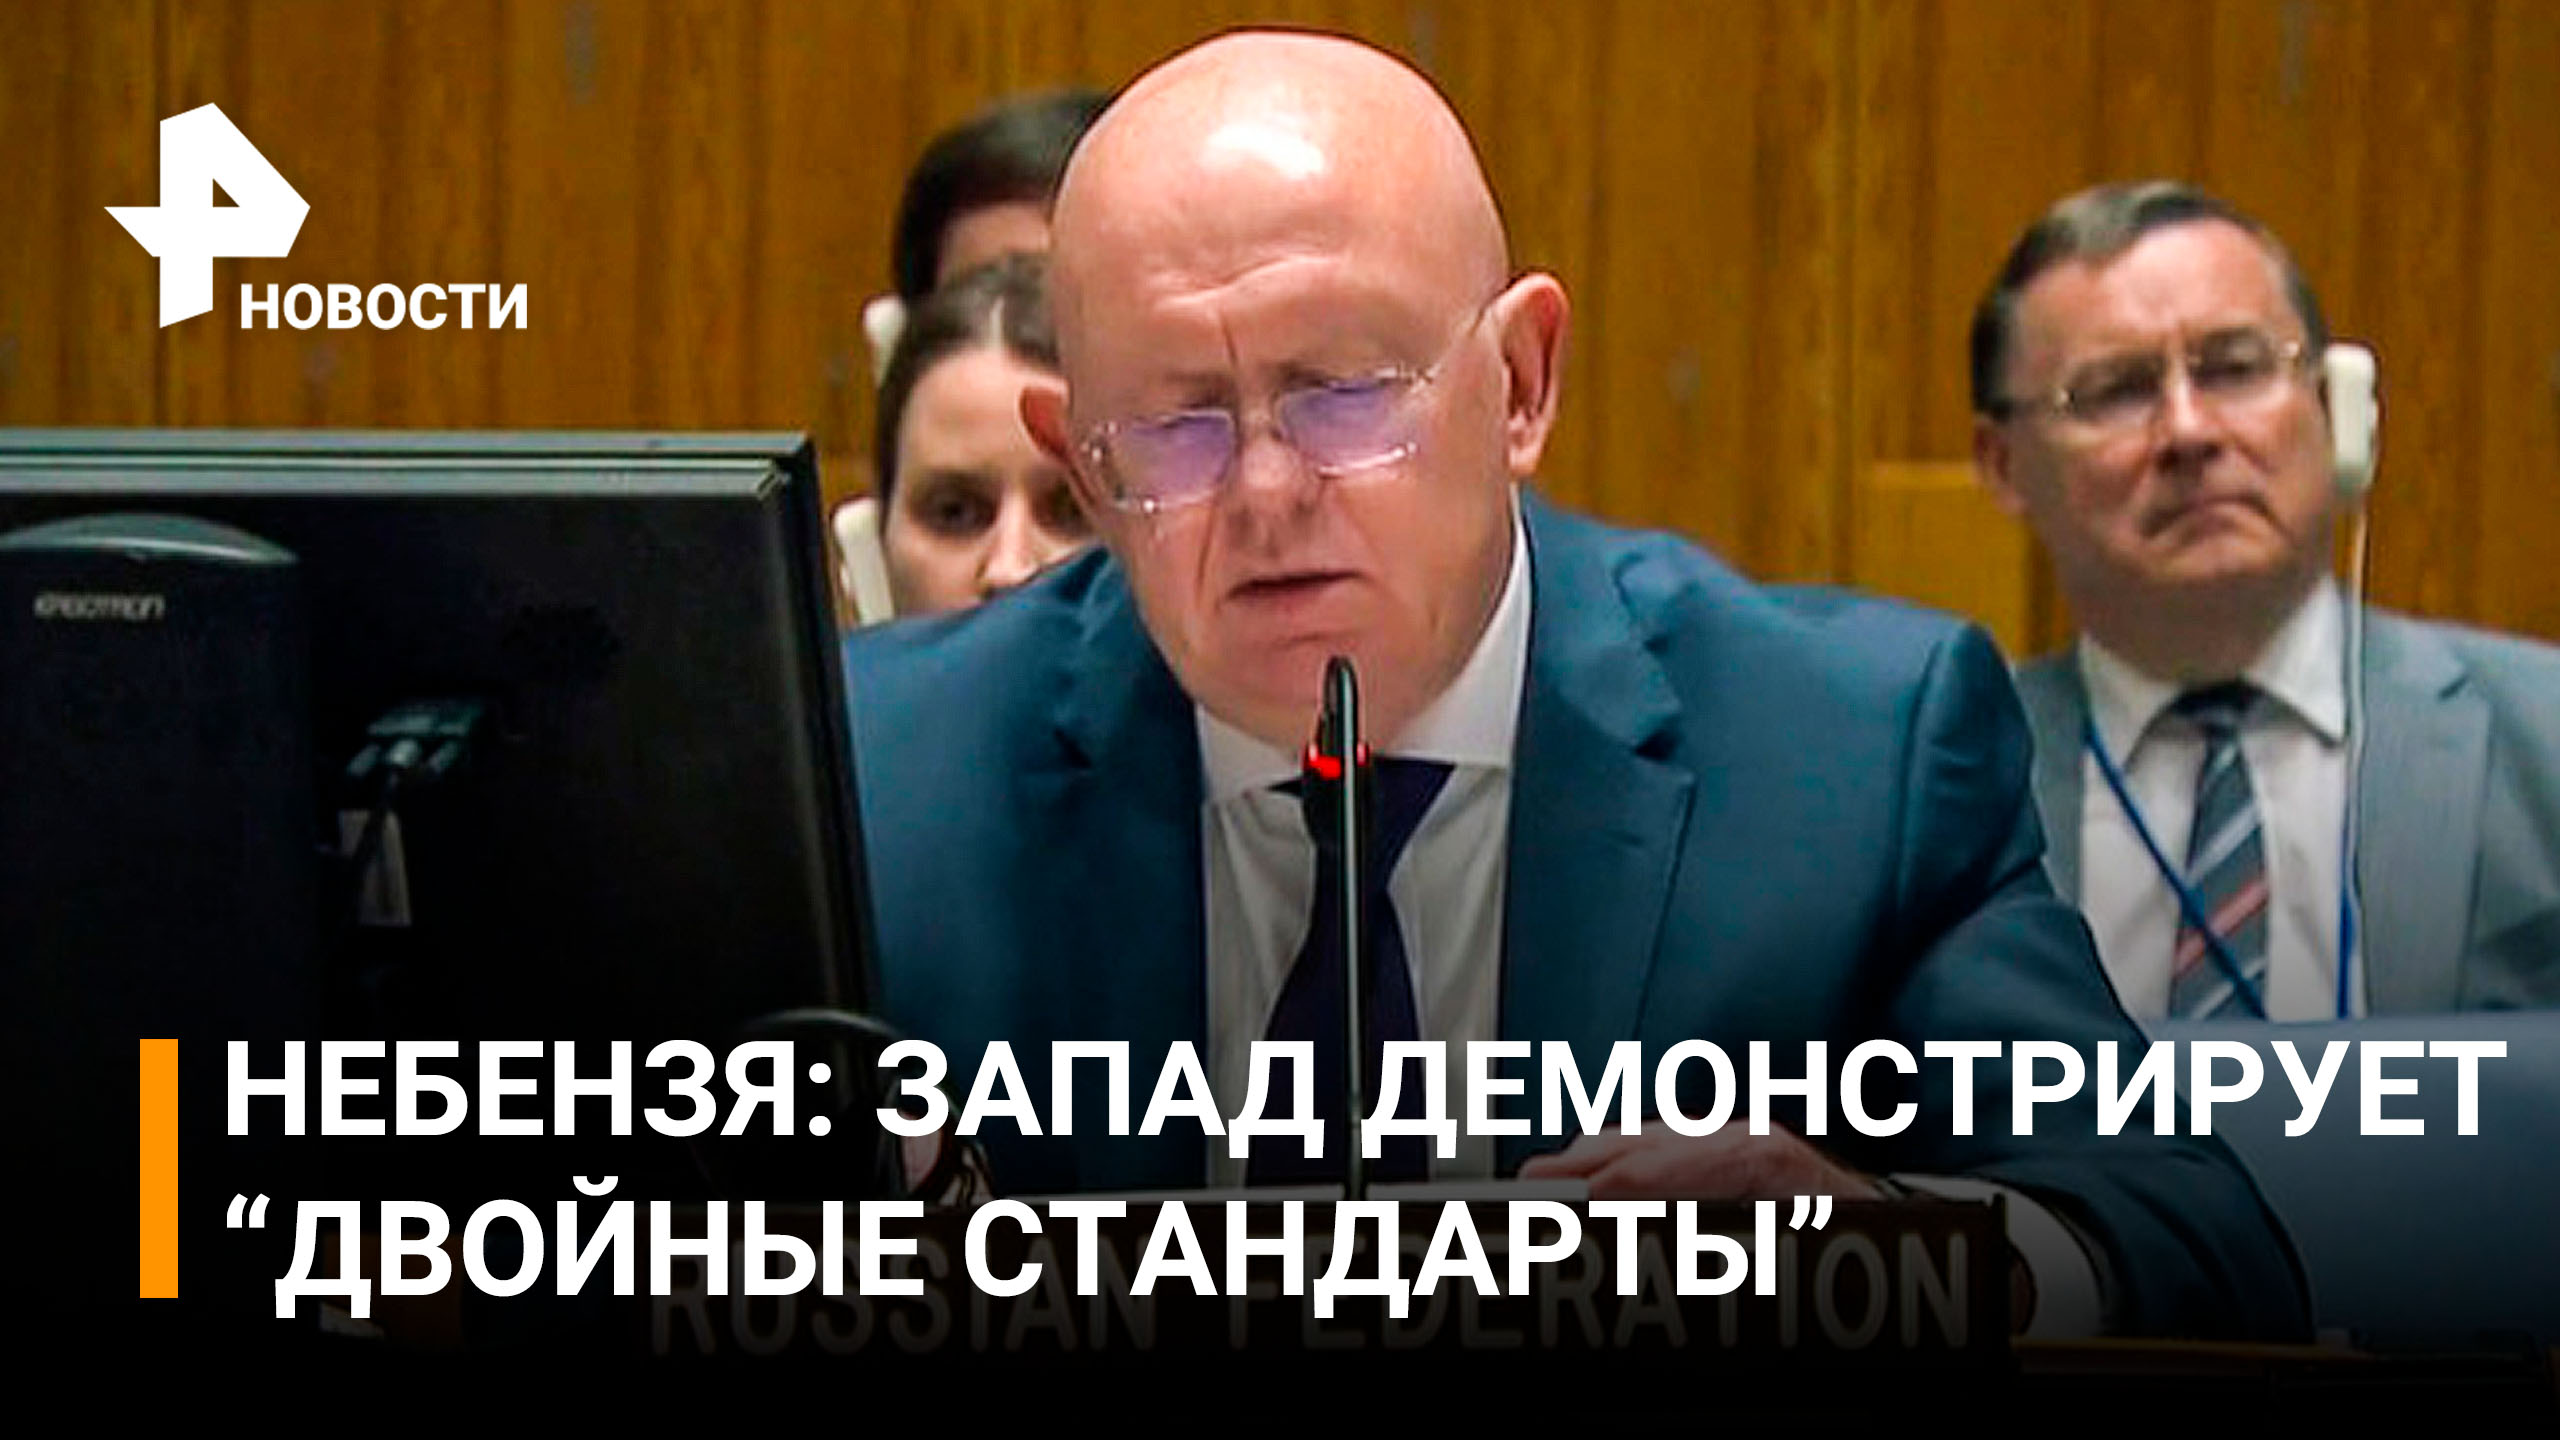 Небензя заявил, что у Киева карт-бланш от Запада на любые преступления / РЕН Новости